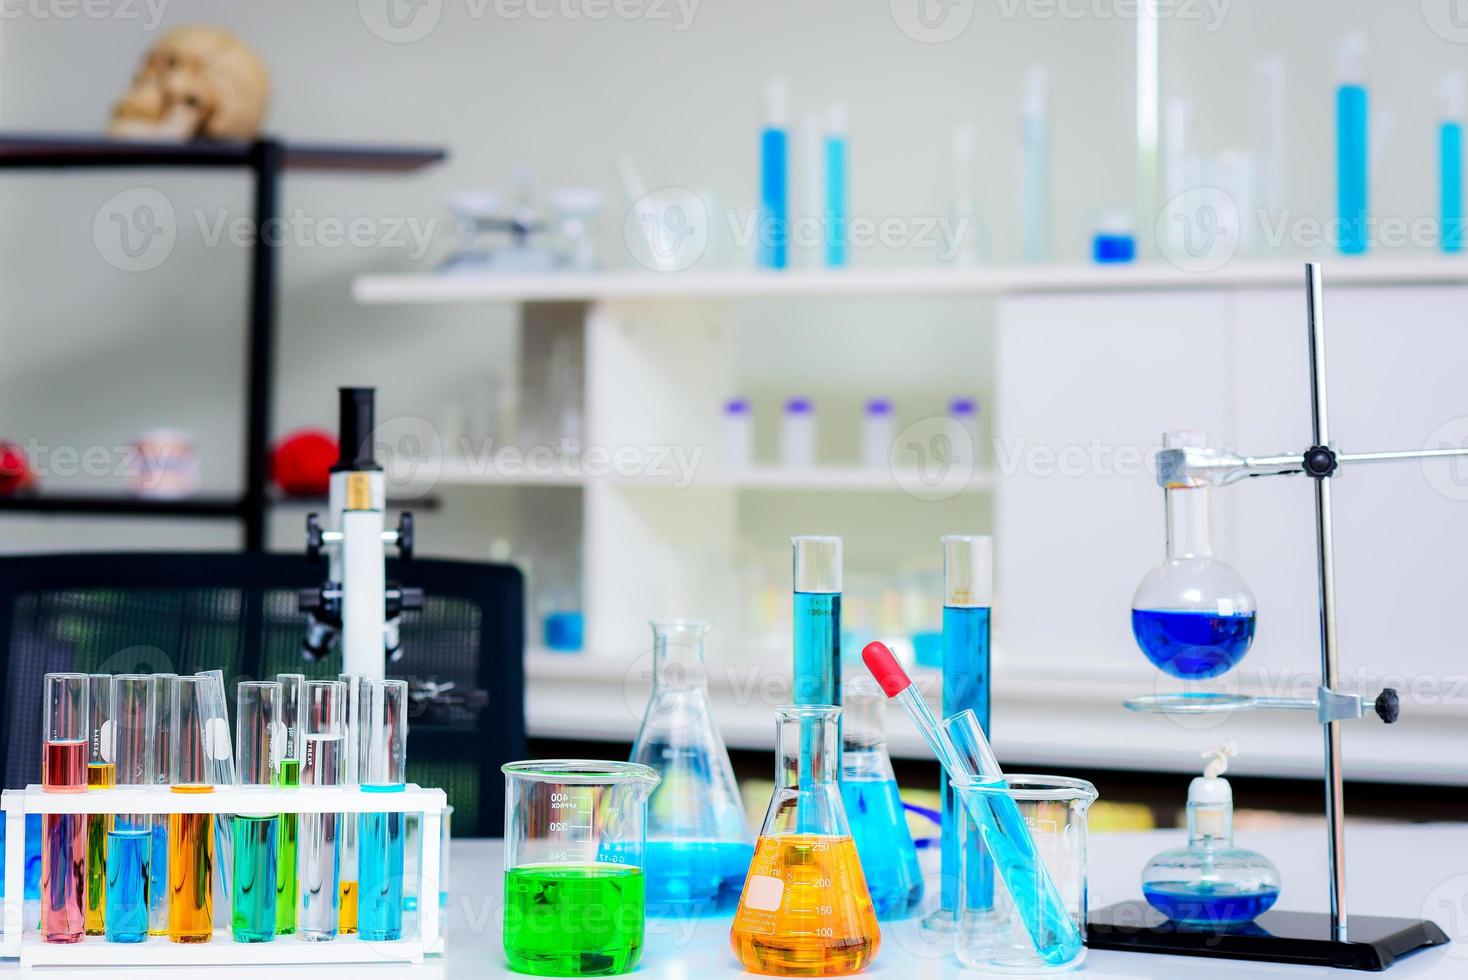 equipamentos de vidro em laboratórios químicos alinhados sobre a mesa exemplos de tubos, frasco, cilindro, queimador, pipeta, copo, conta-gotas, microscópio foto